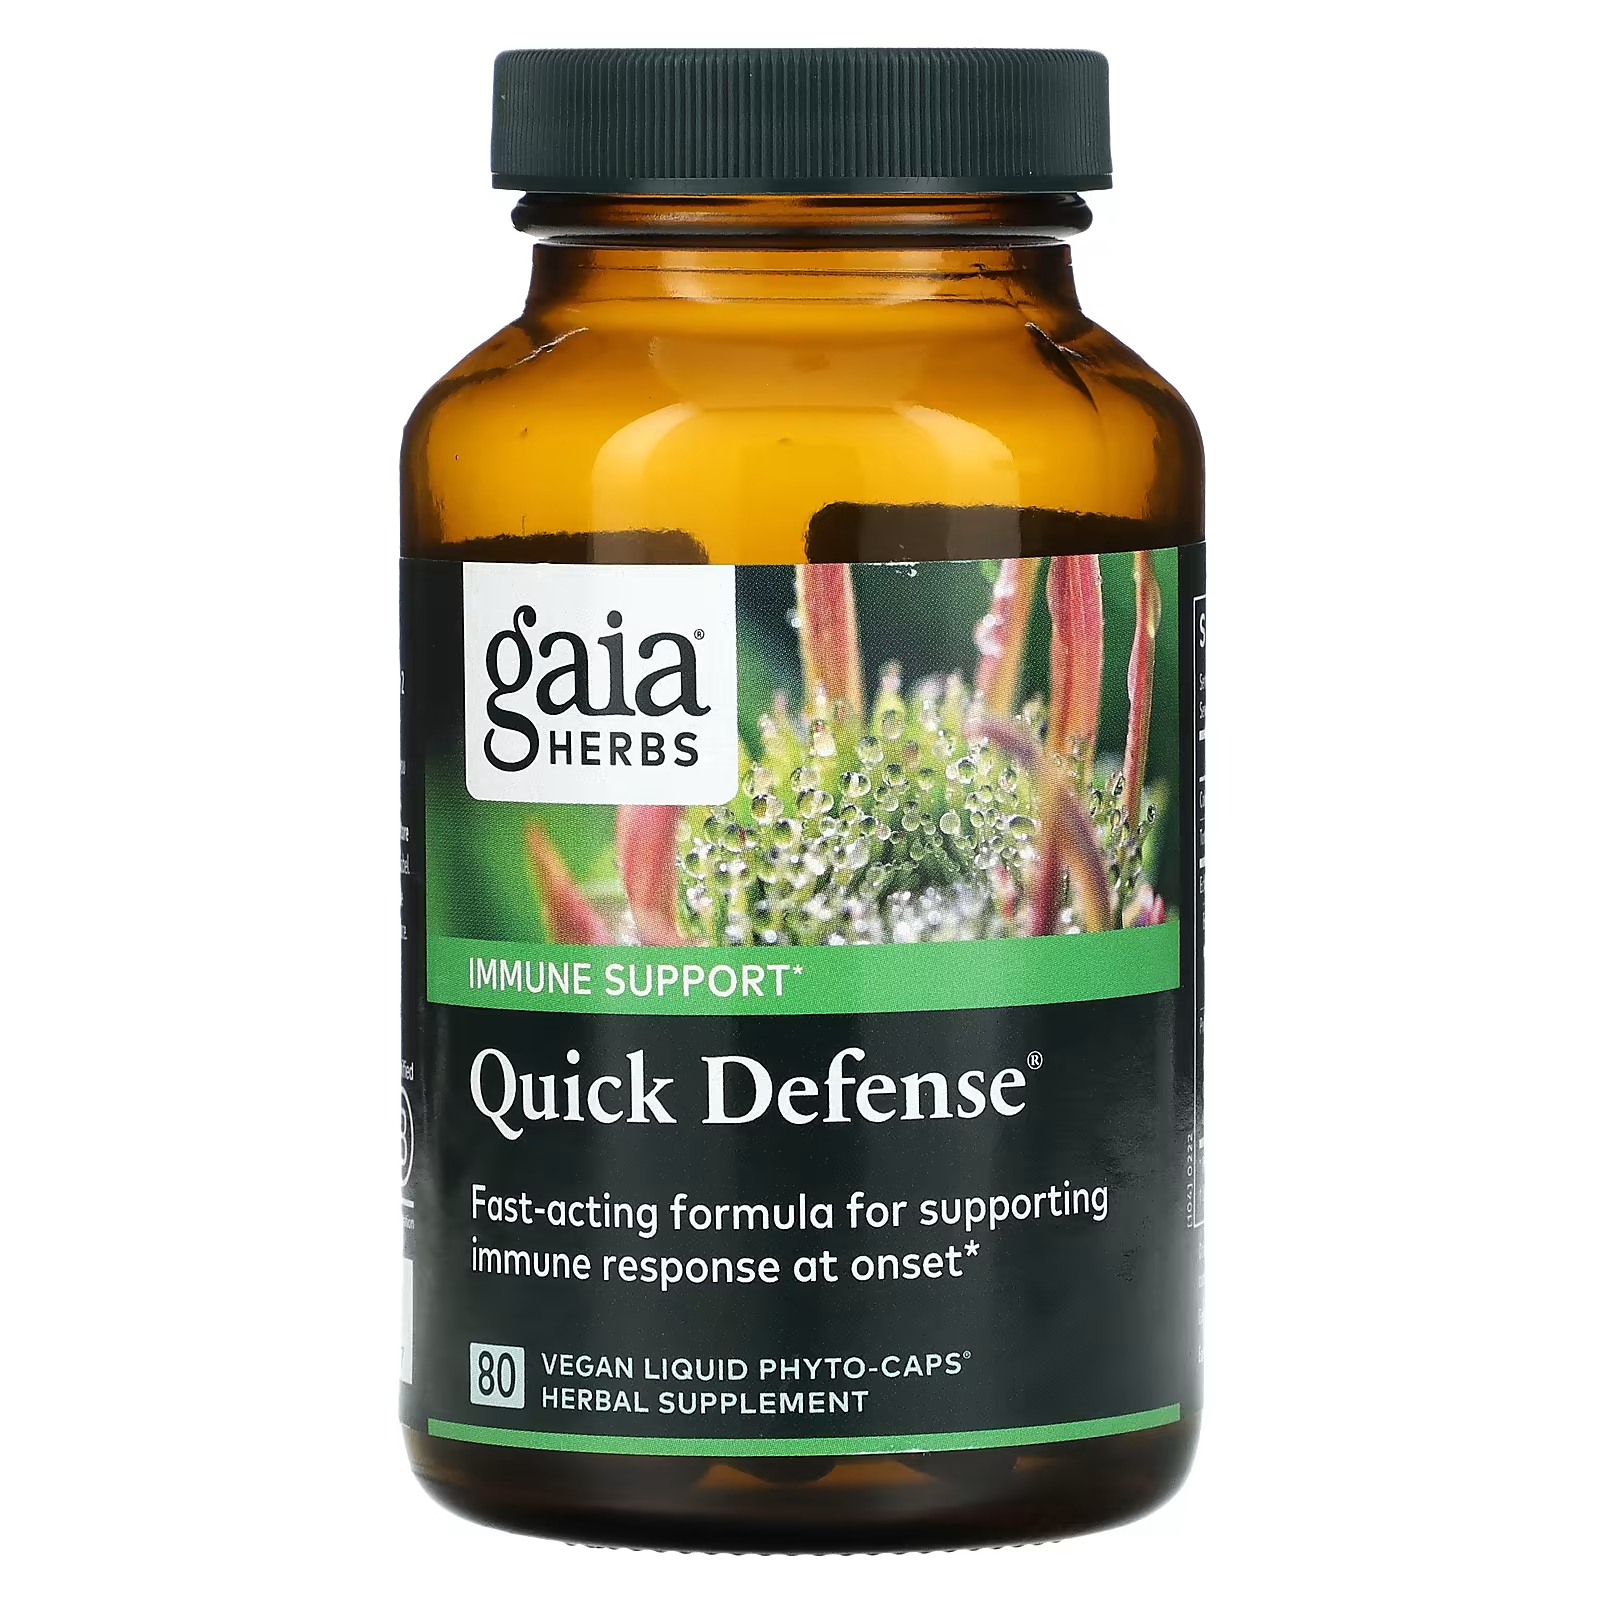 цена Пищевая добавка Gaia Herbs Quick Defense, 80 веганских жидких фито-капсул